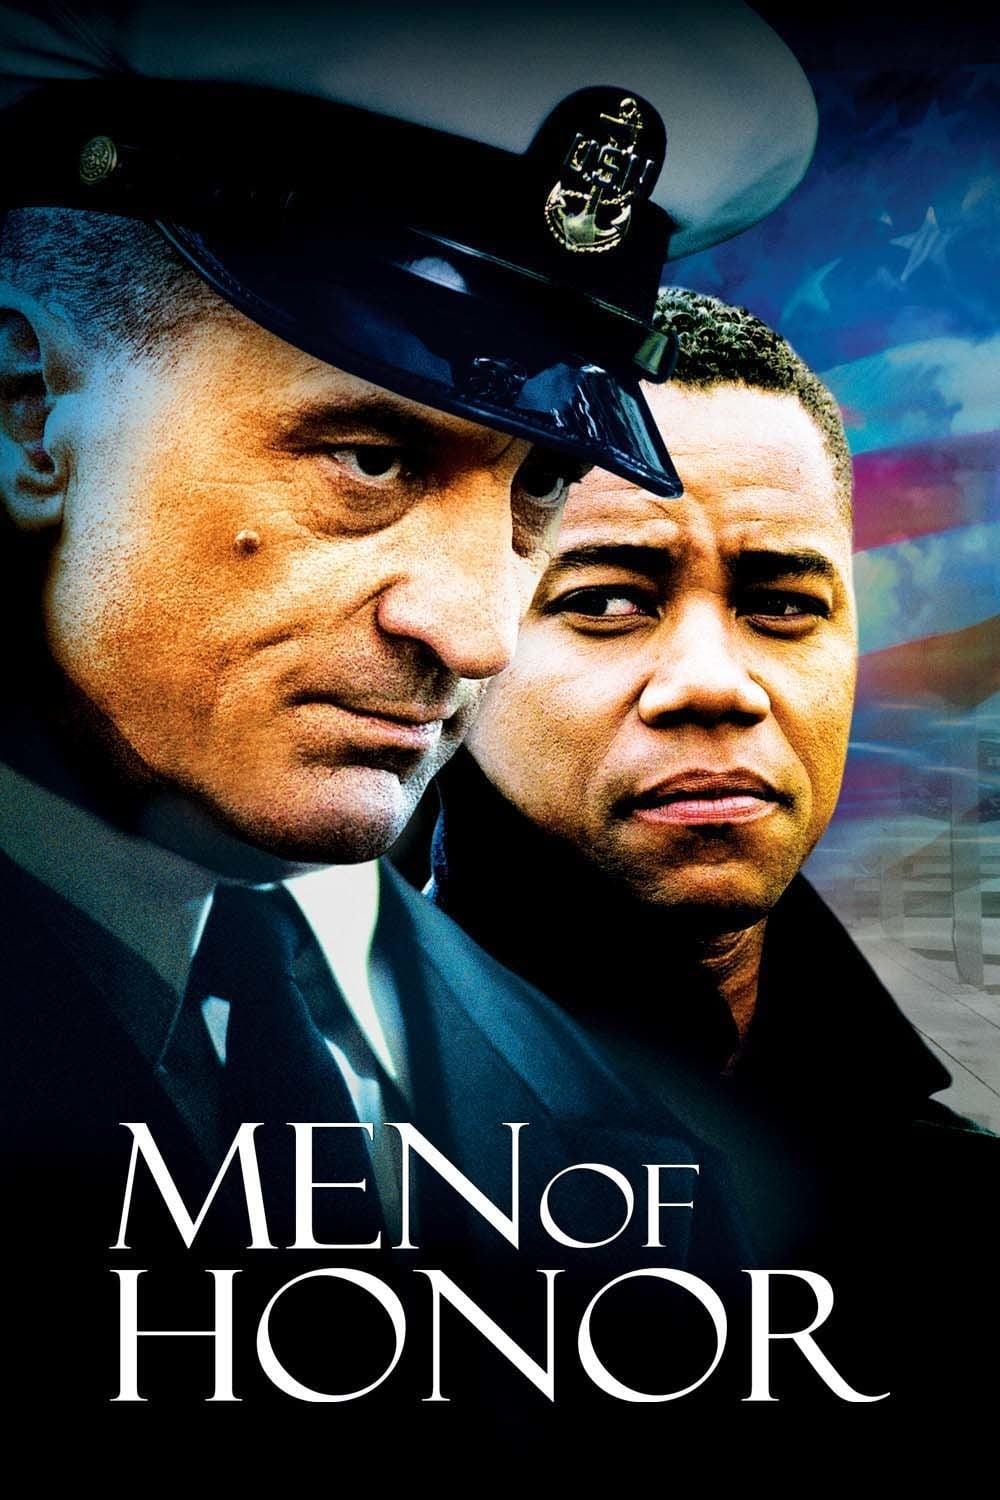 Men of Honor poster